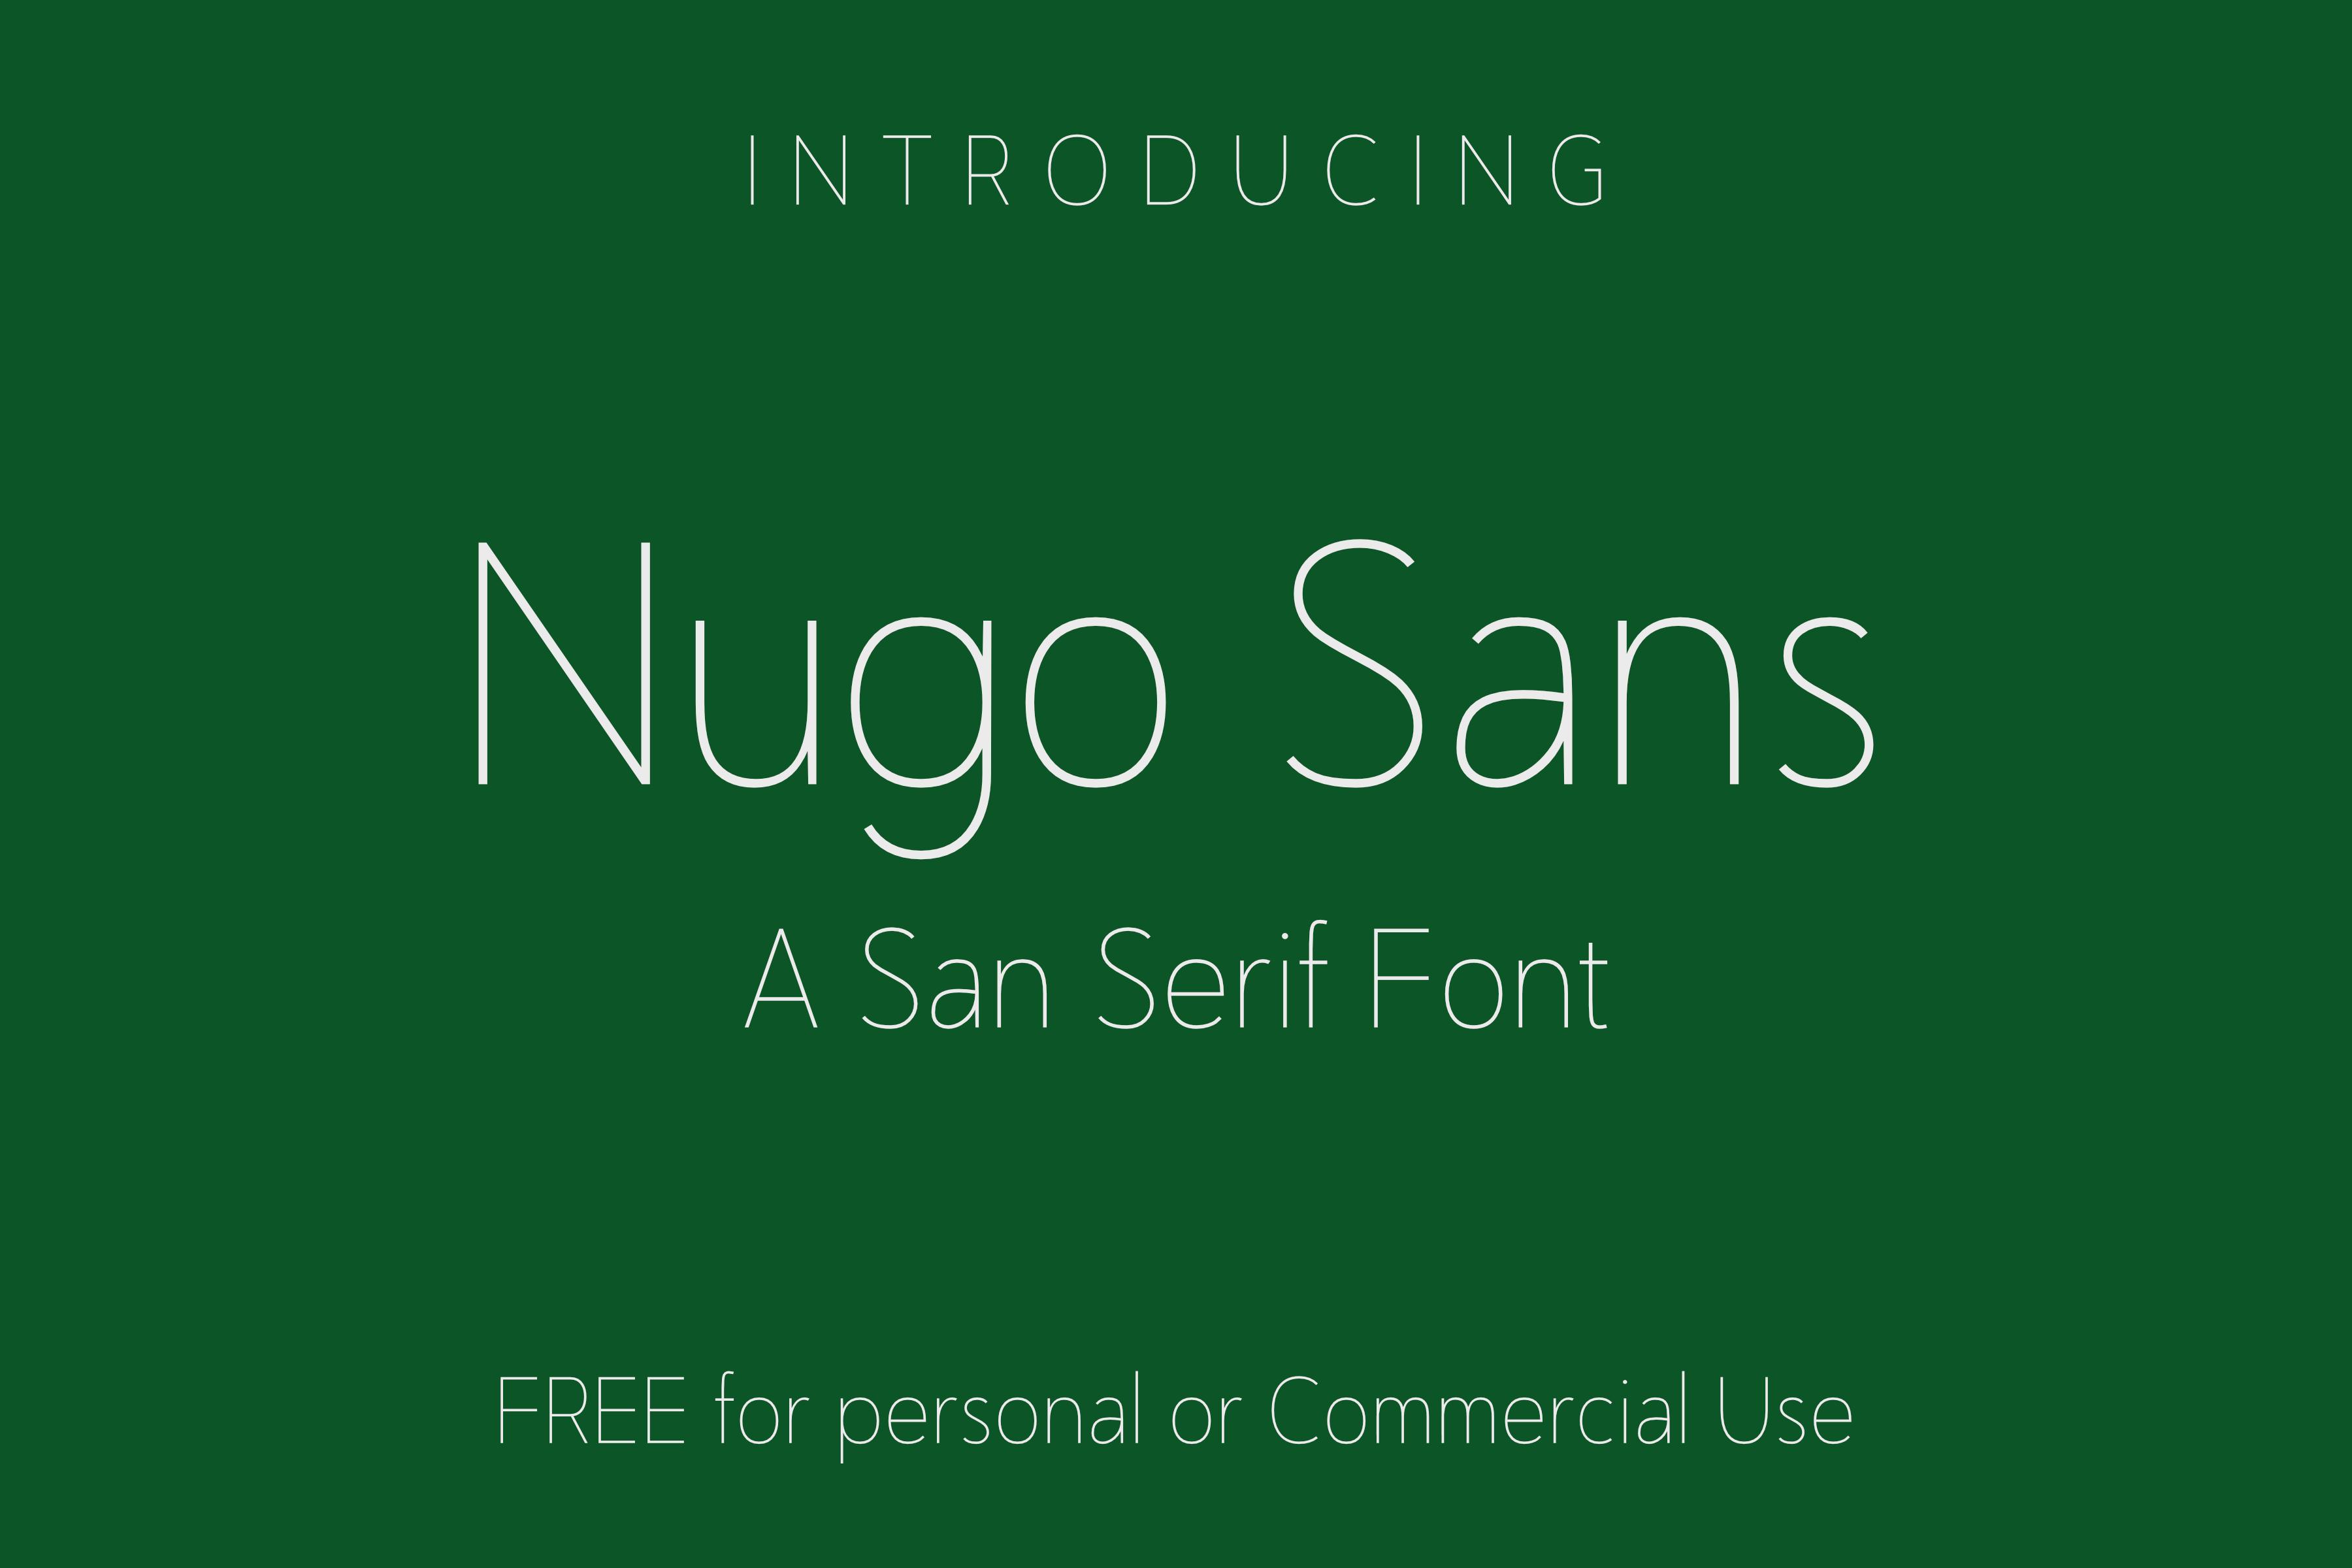 Nugo Sans Font